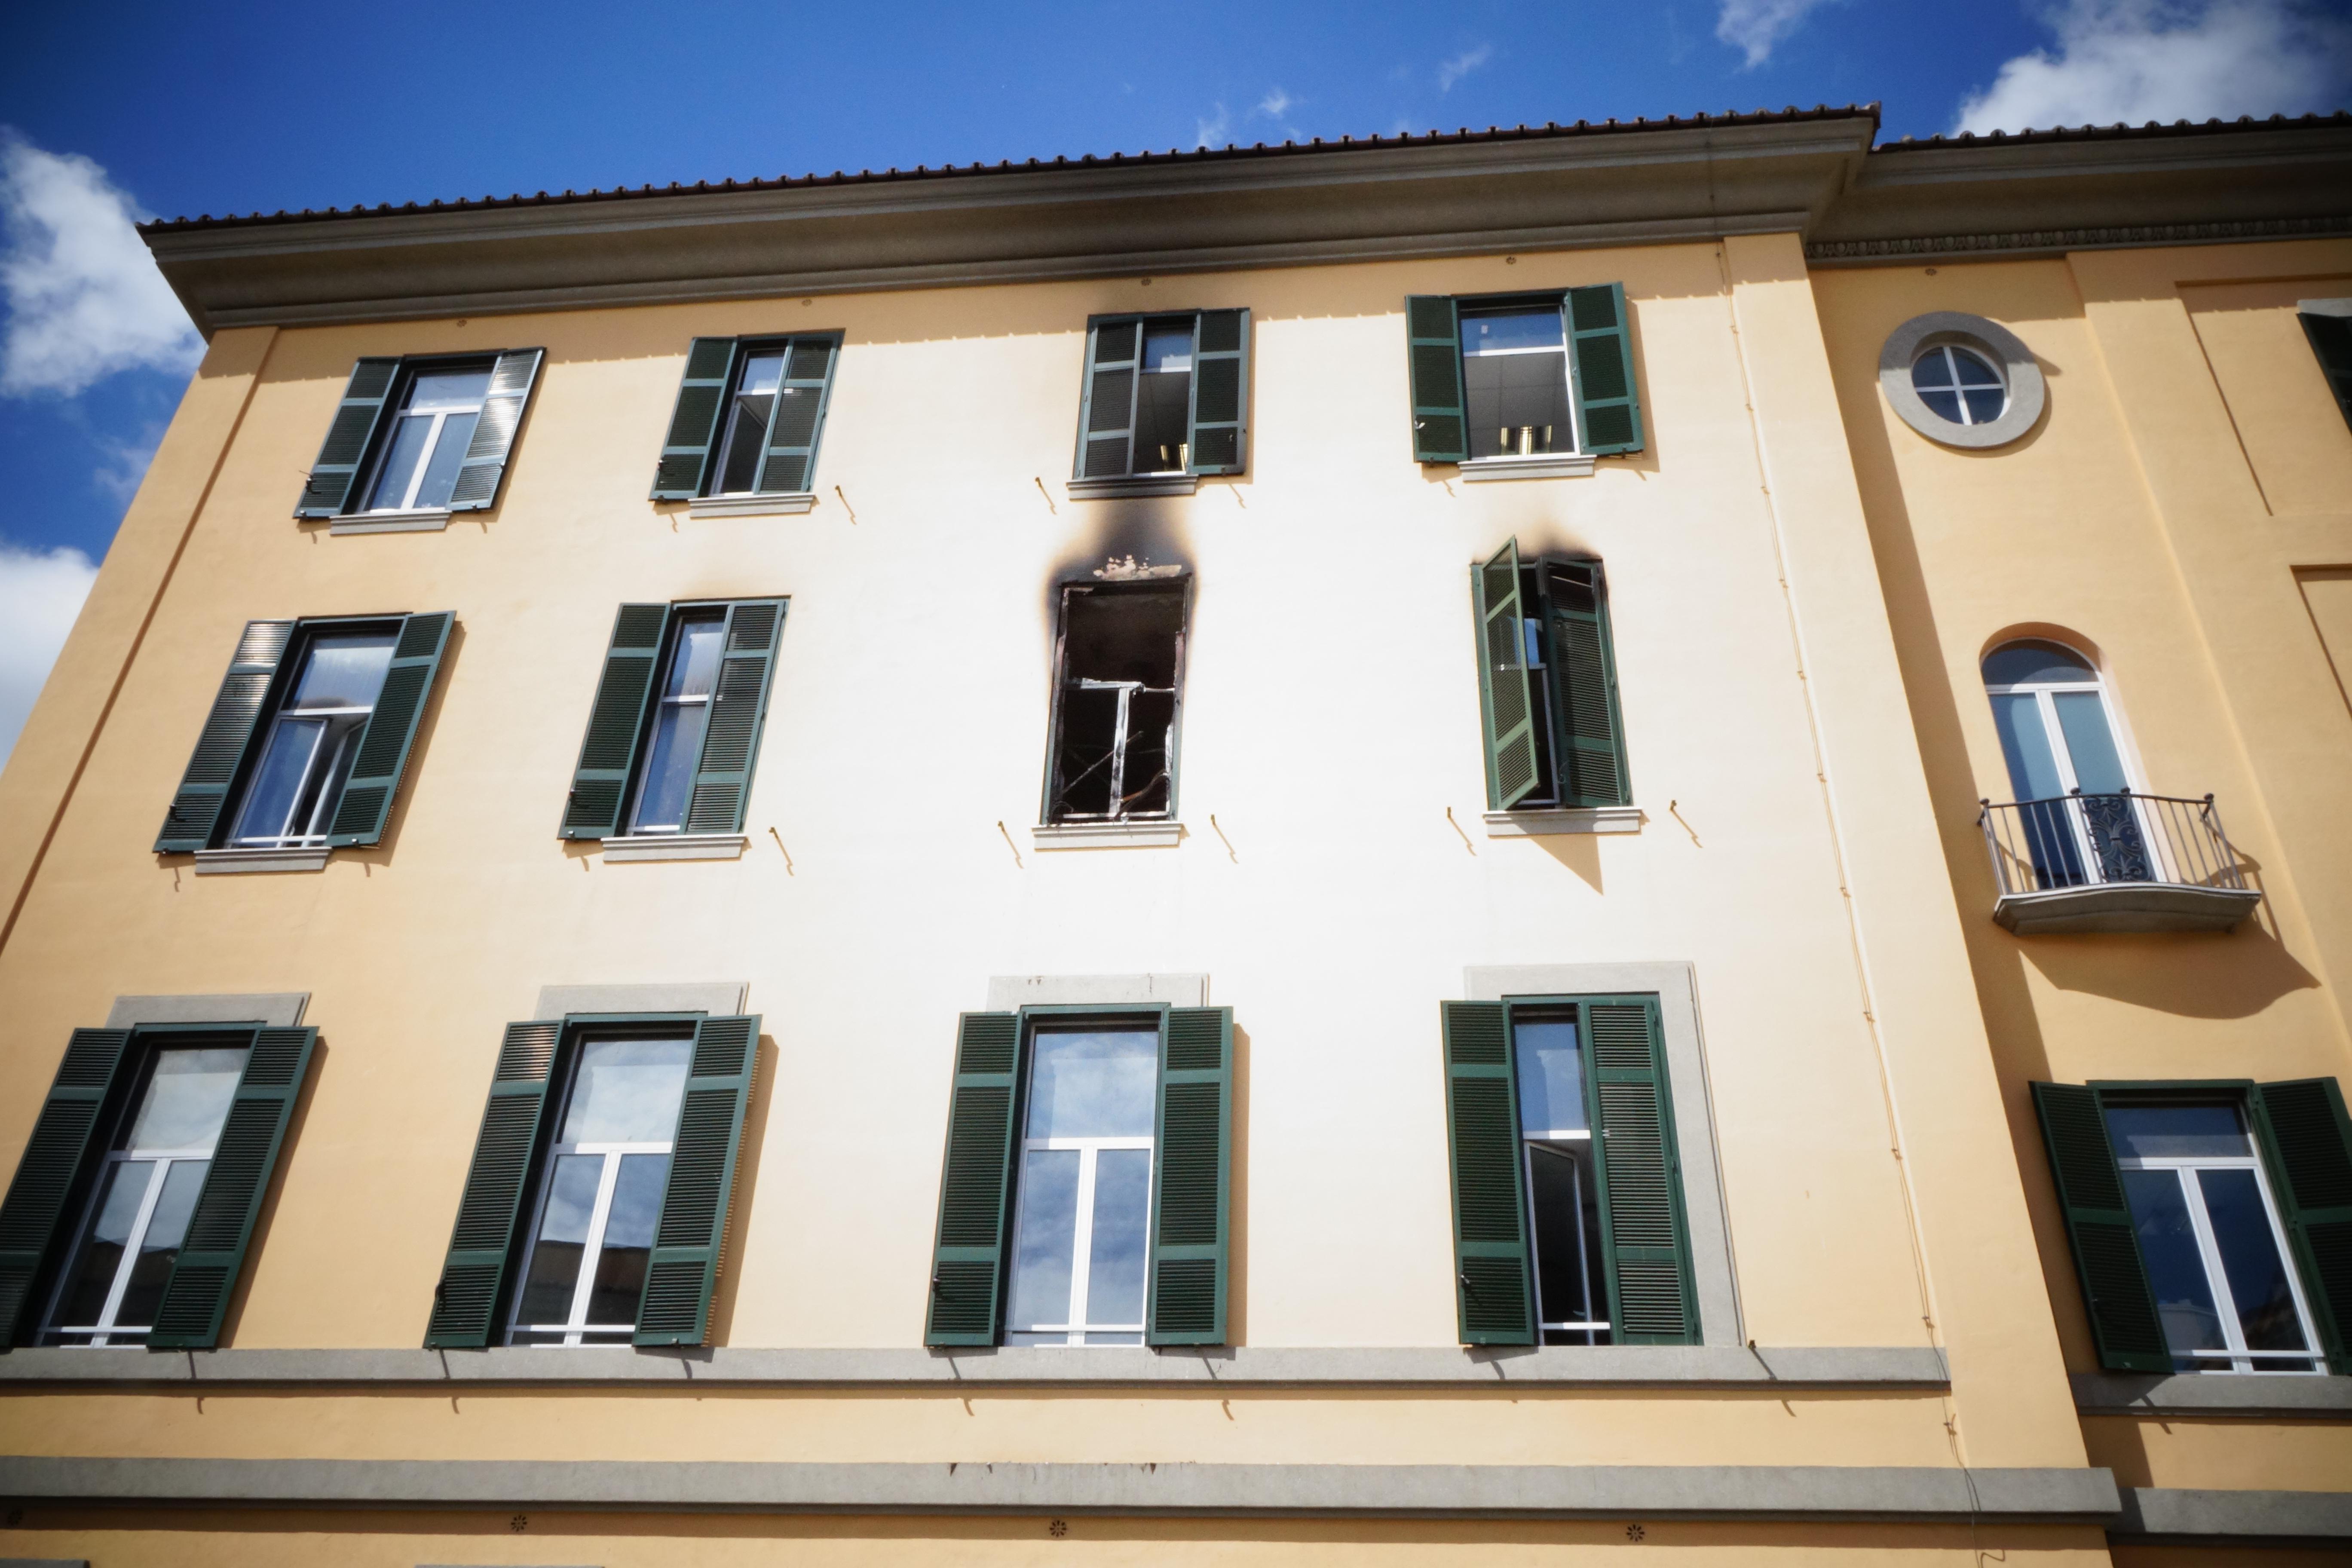 Roma, 2 maggio 2016. Ospedale San Camillo, il Padiglione Maroncelli dove è scoppiato un incendio. Il direttore generale Antonio D'Urso (Foto Adnkronos/Cristiano Camera)